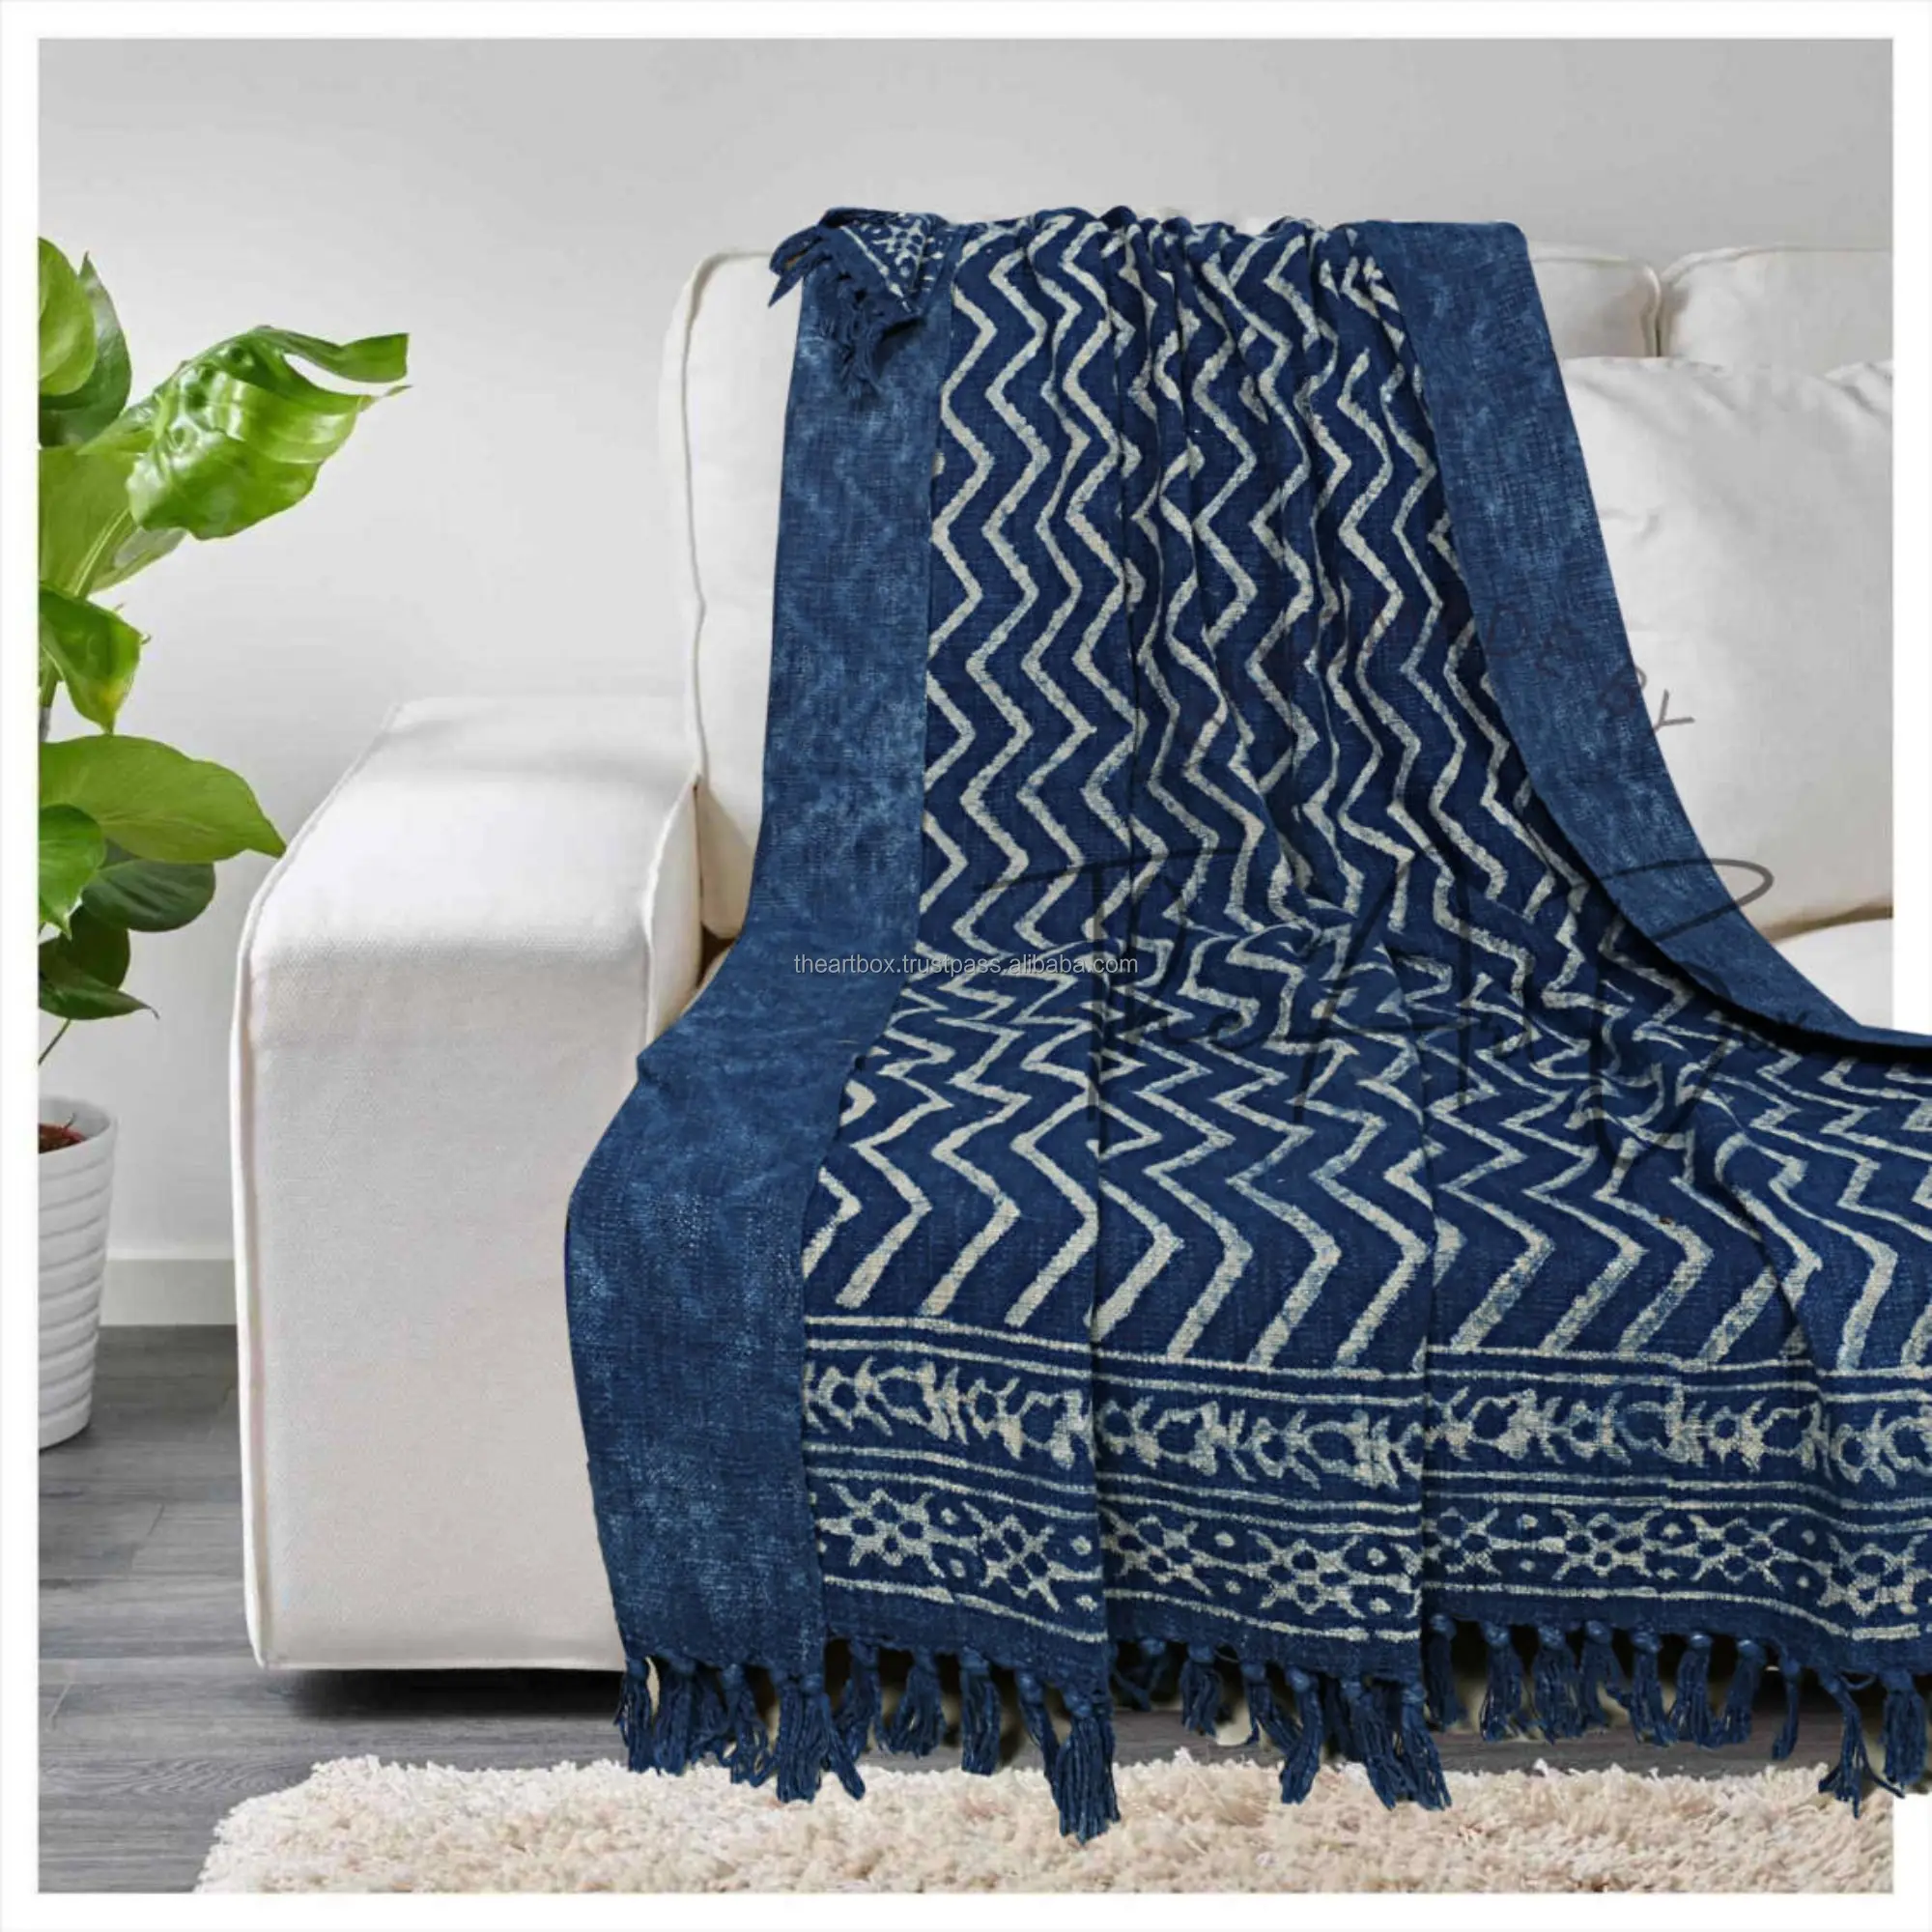 Indigo cobertor xadrez azul com camadas duplas, tecido natural, pré-lavado, cobertor para praia, cobertor duplo para o verão